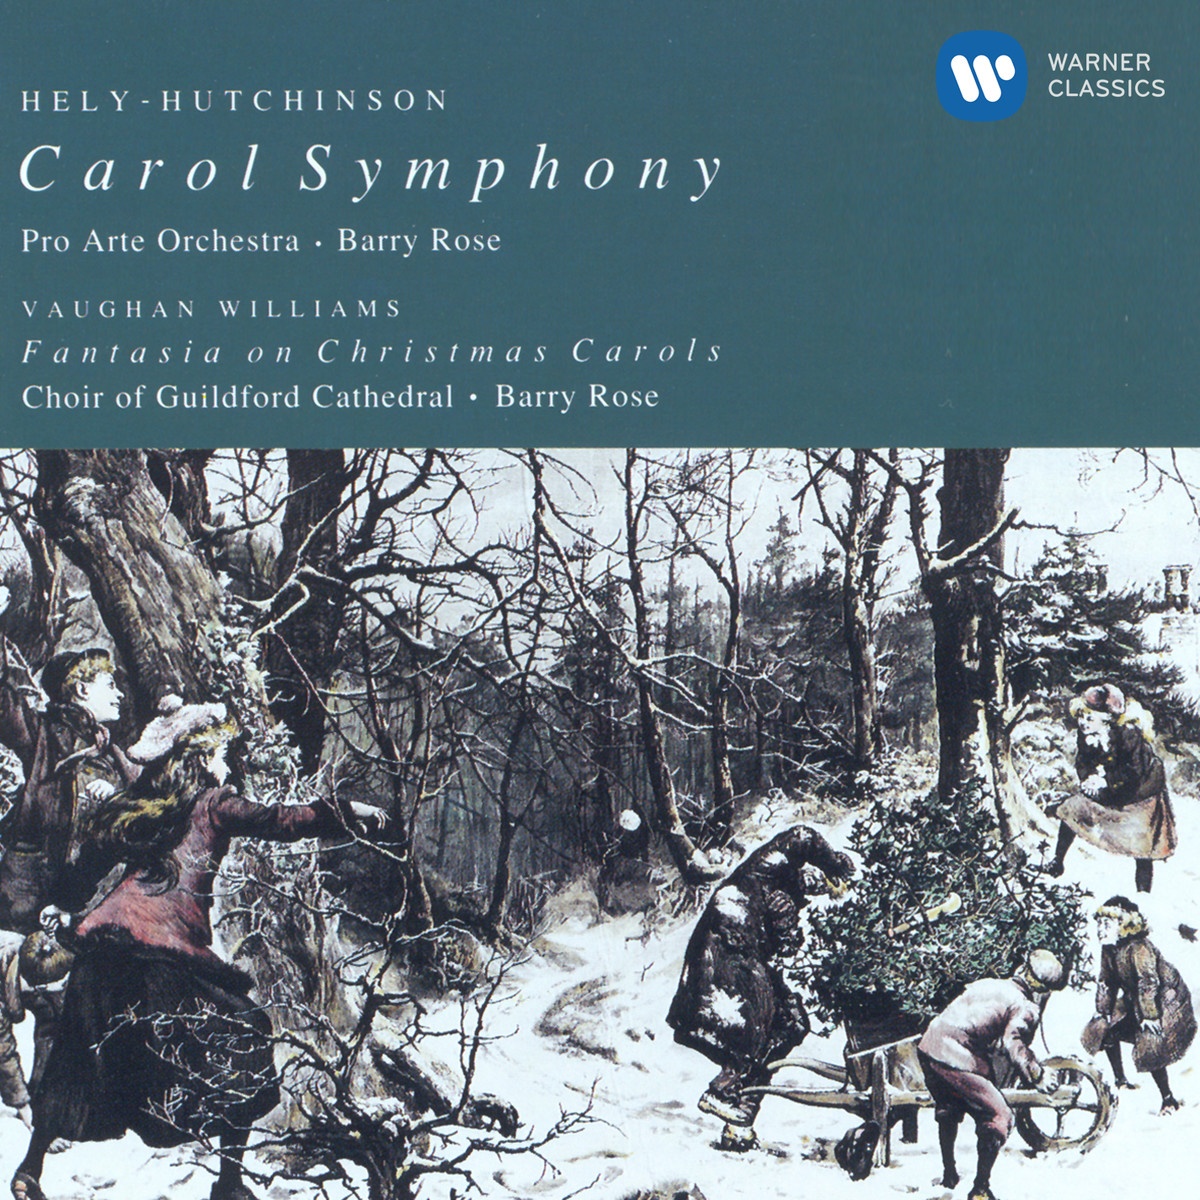 Carol Symphony (1991 Digital Remaster): Andante quasi lento e cantabile -